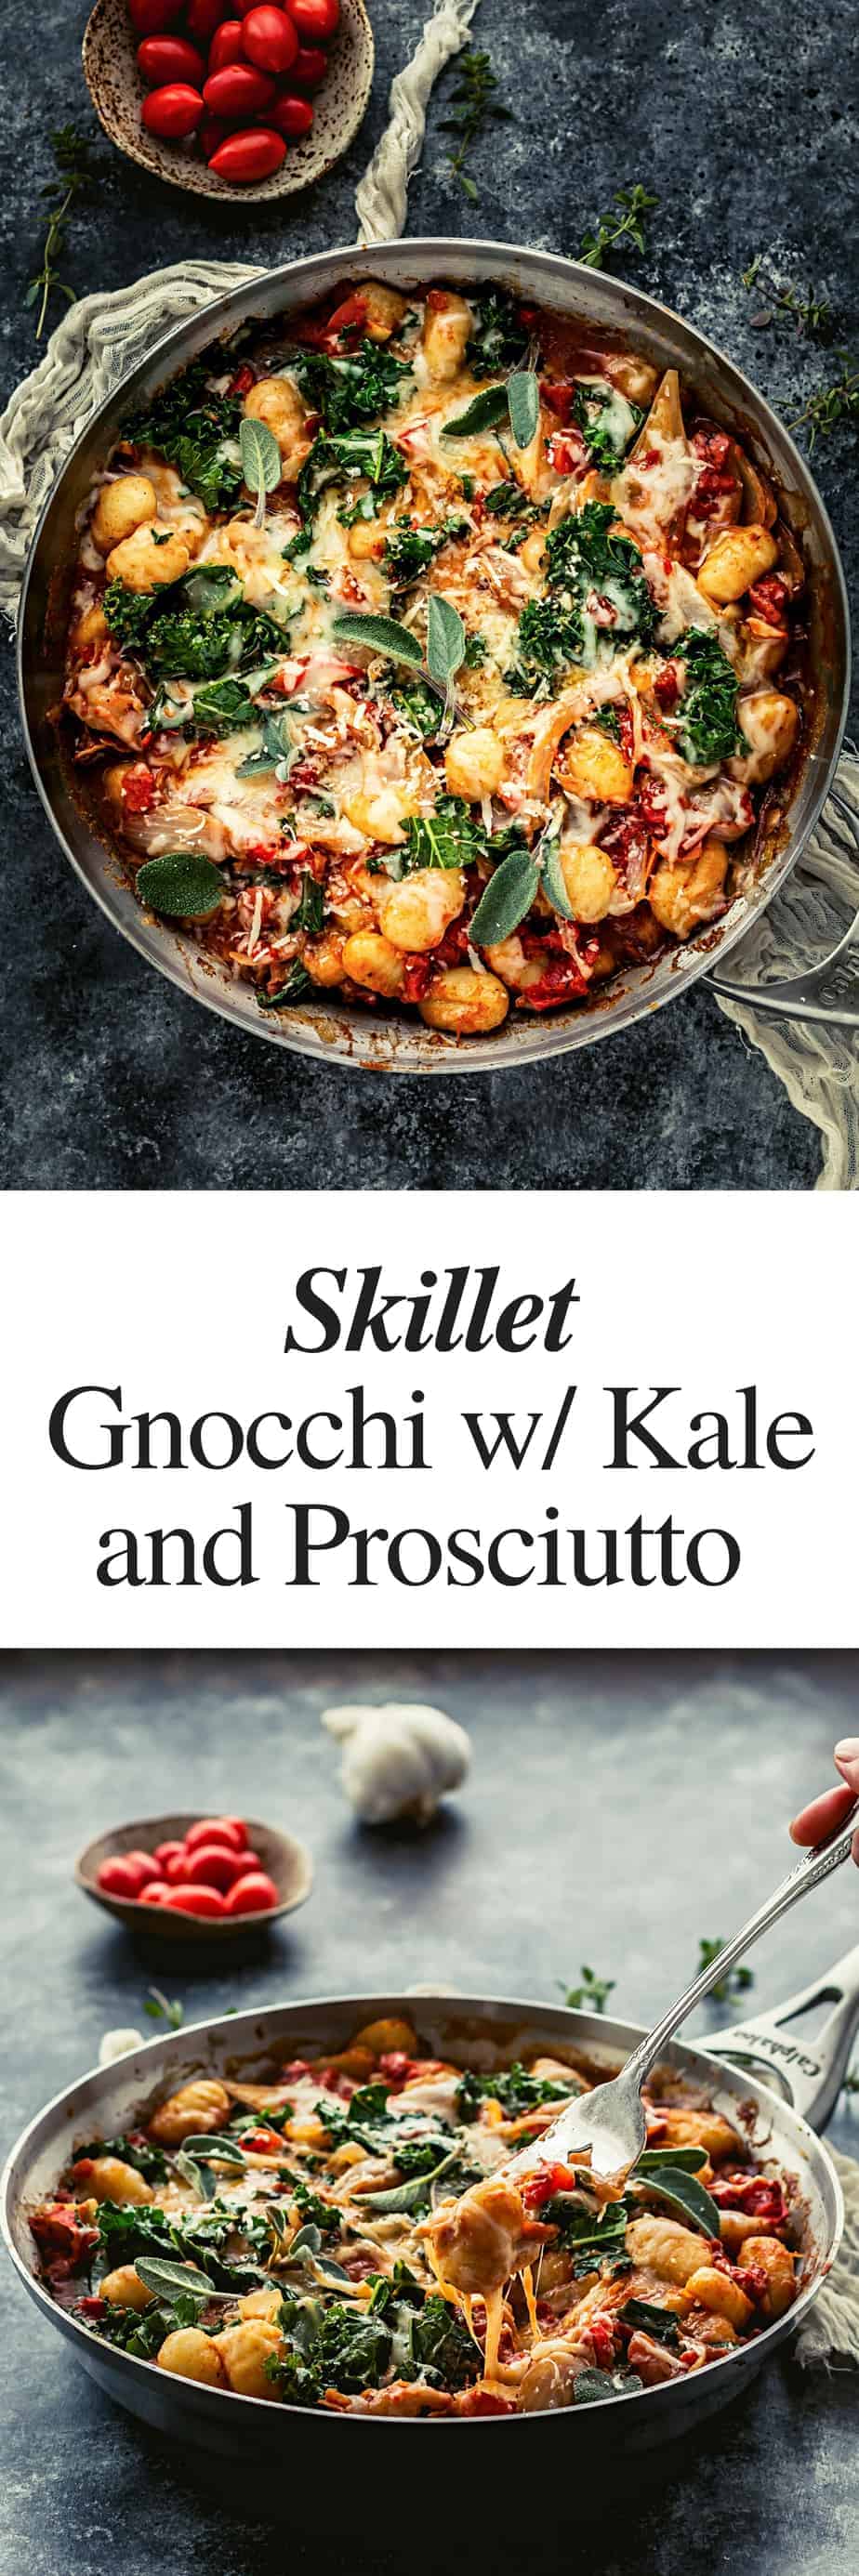 skillet potato gnocchi recipe with prosciutto and kale